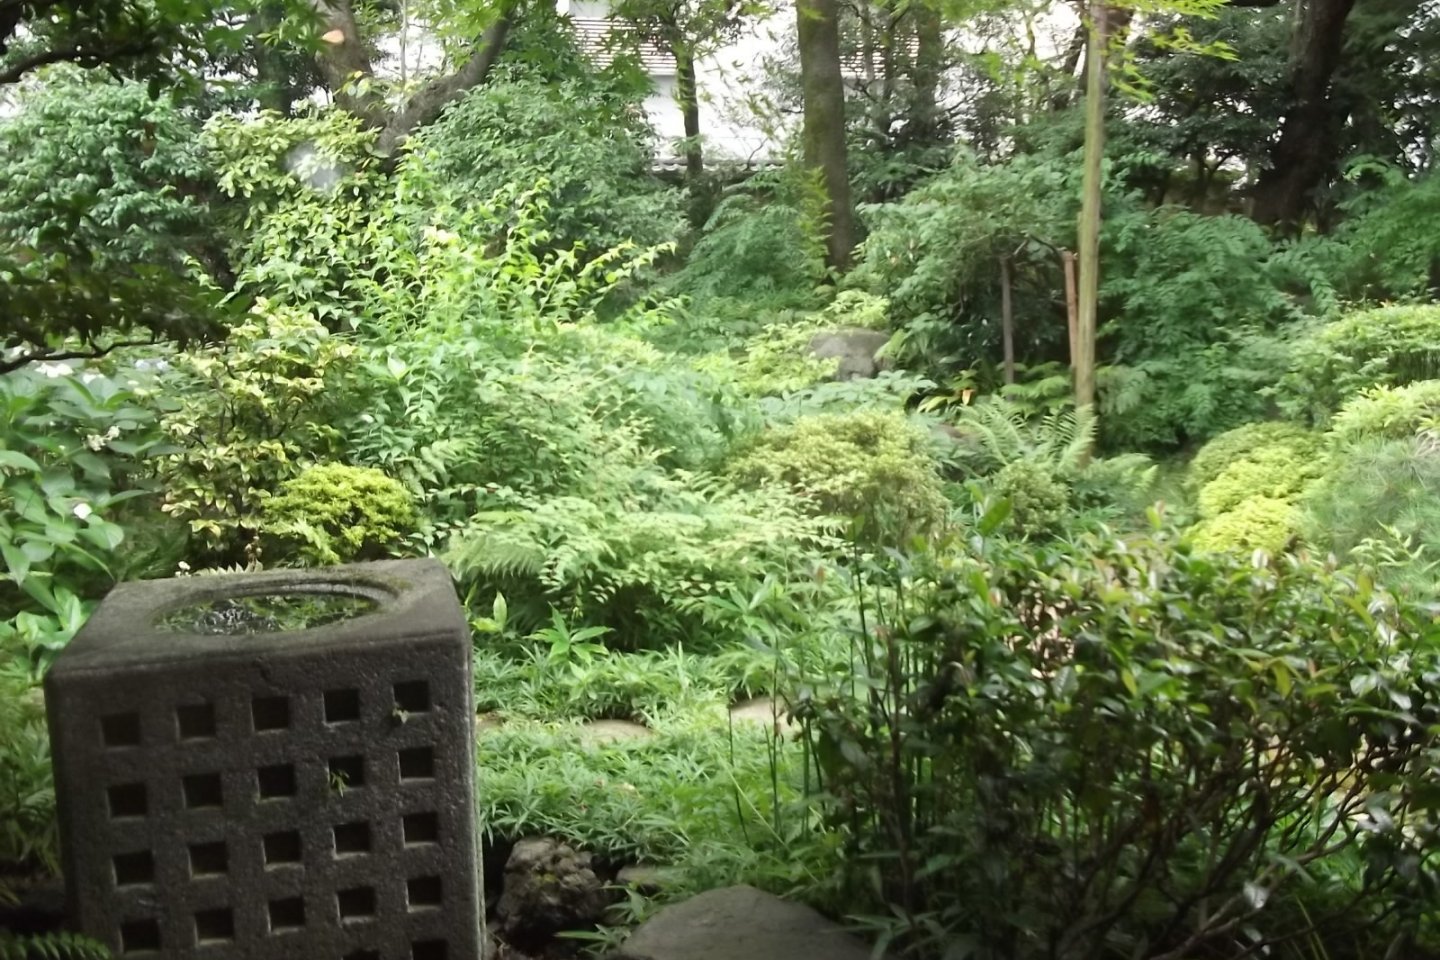 The garden where Yokoyama would relax